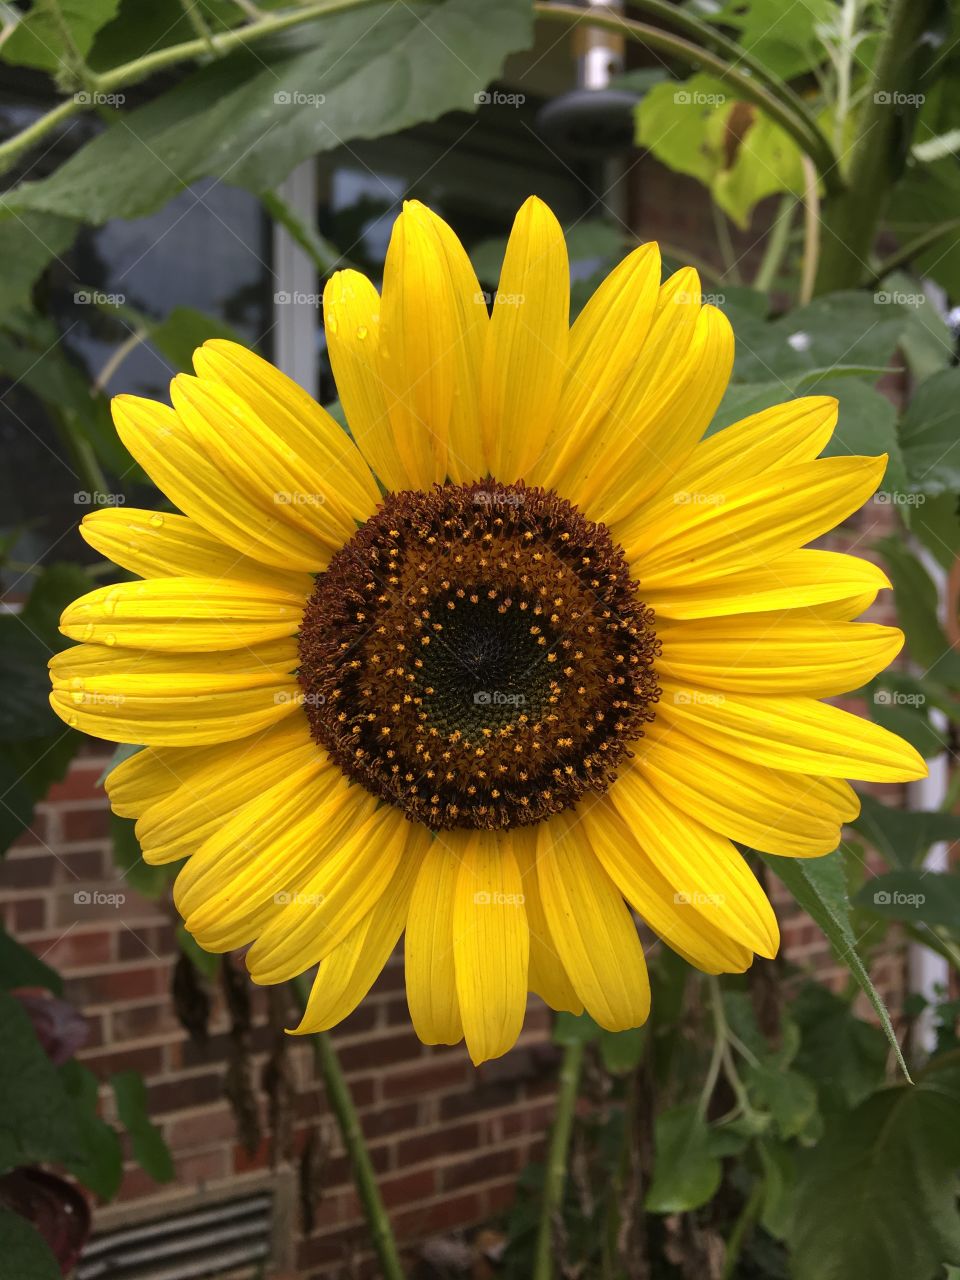 Good morning sunflower